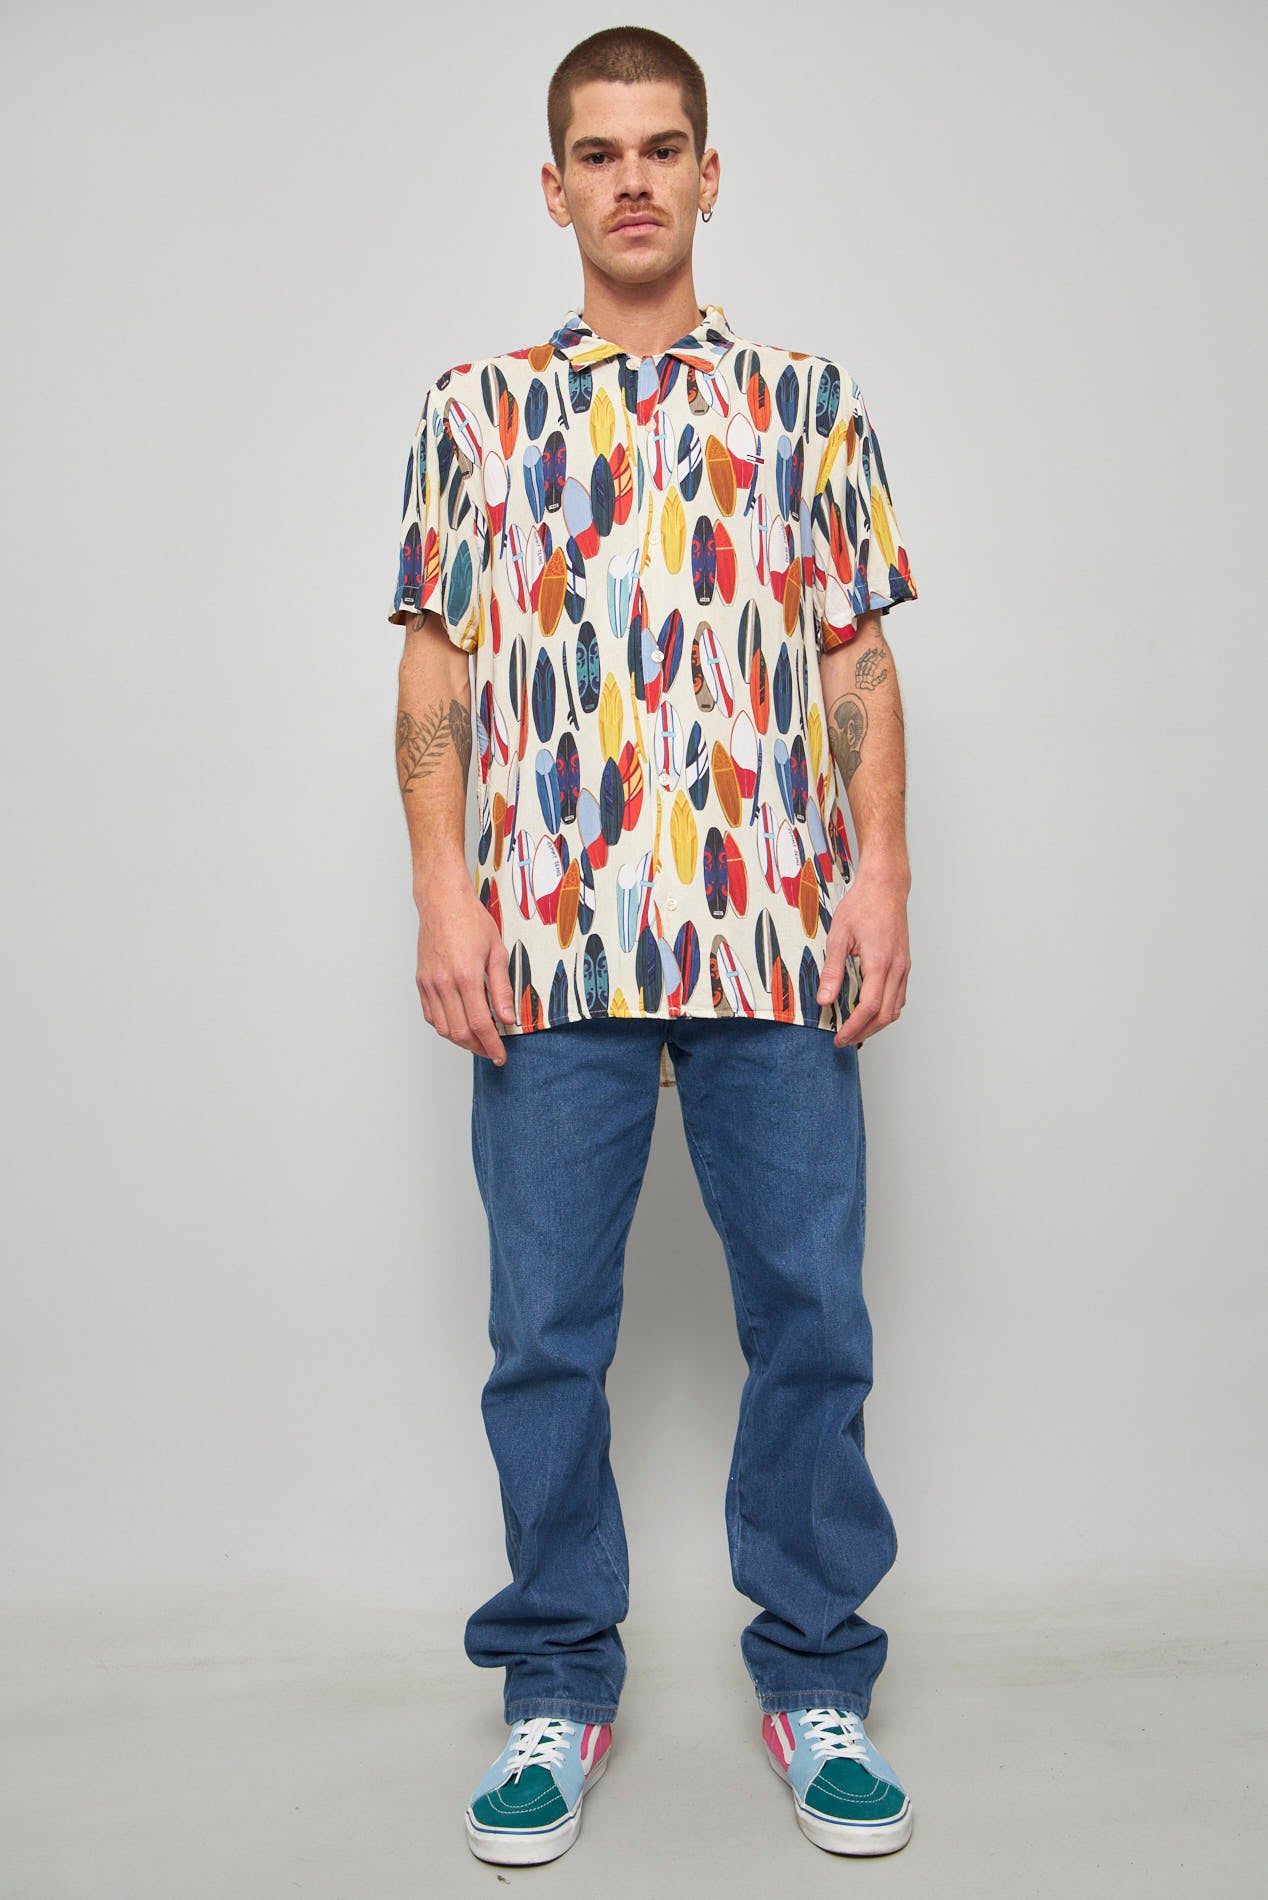 Camisa casual  multicolor tommy hi talla M 109